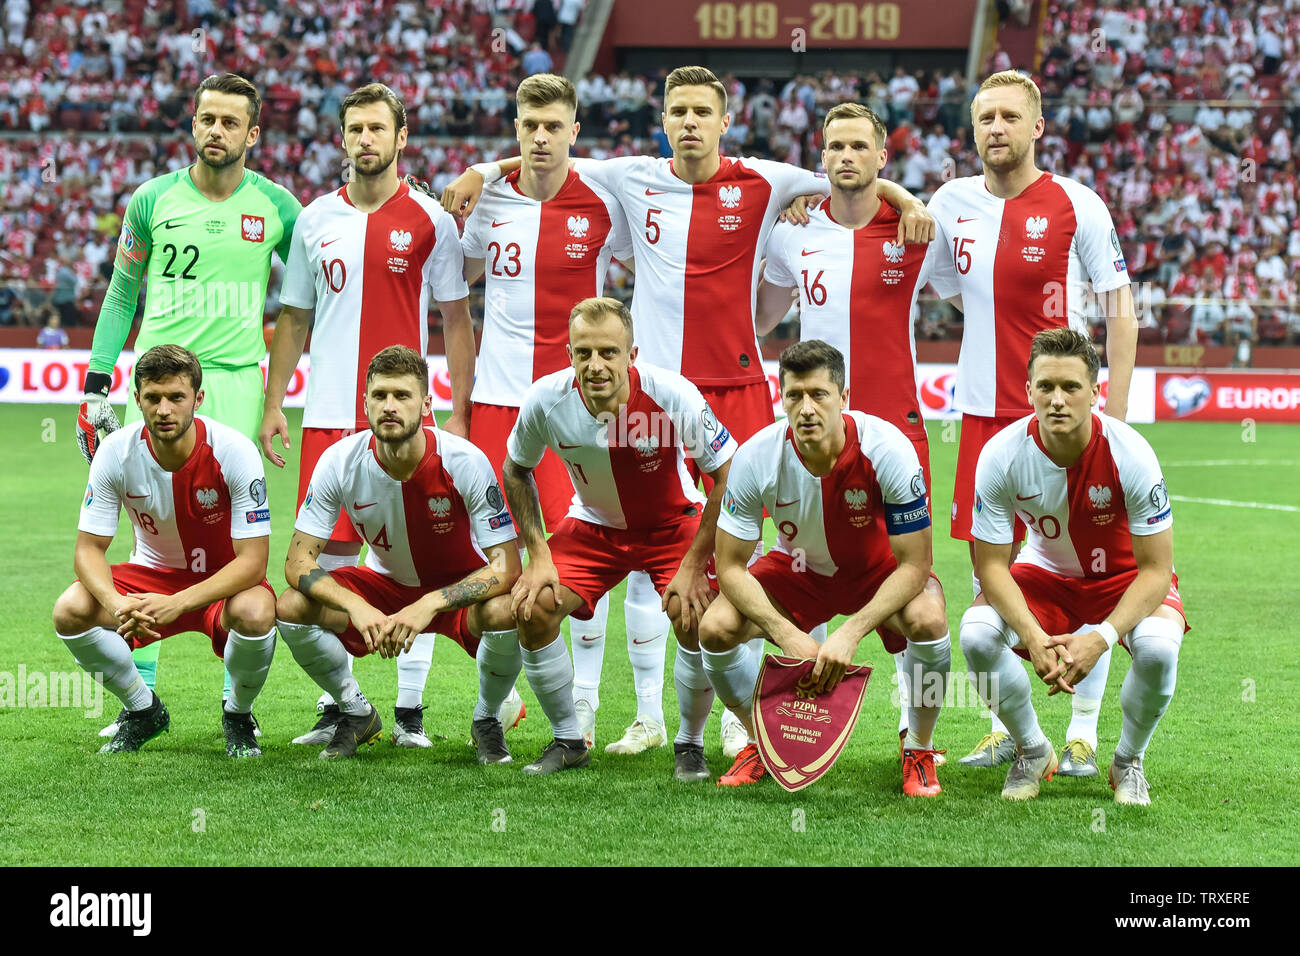 Warschau, Polen - 10. JUNI 2019: Qualifikation Euro 2020 match Polen - Israel 4:0. Team aus Polen. Stockfoto